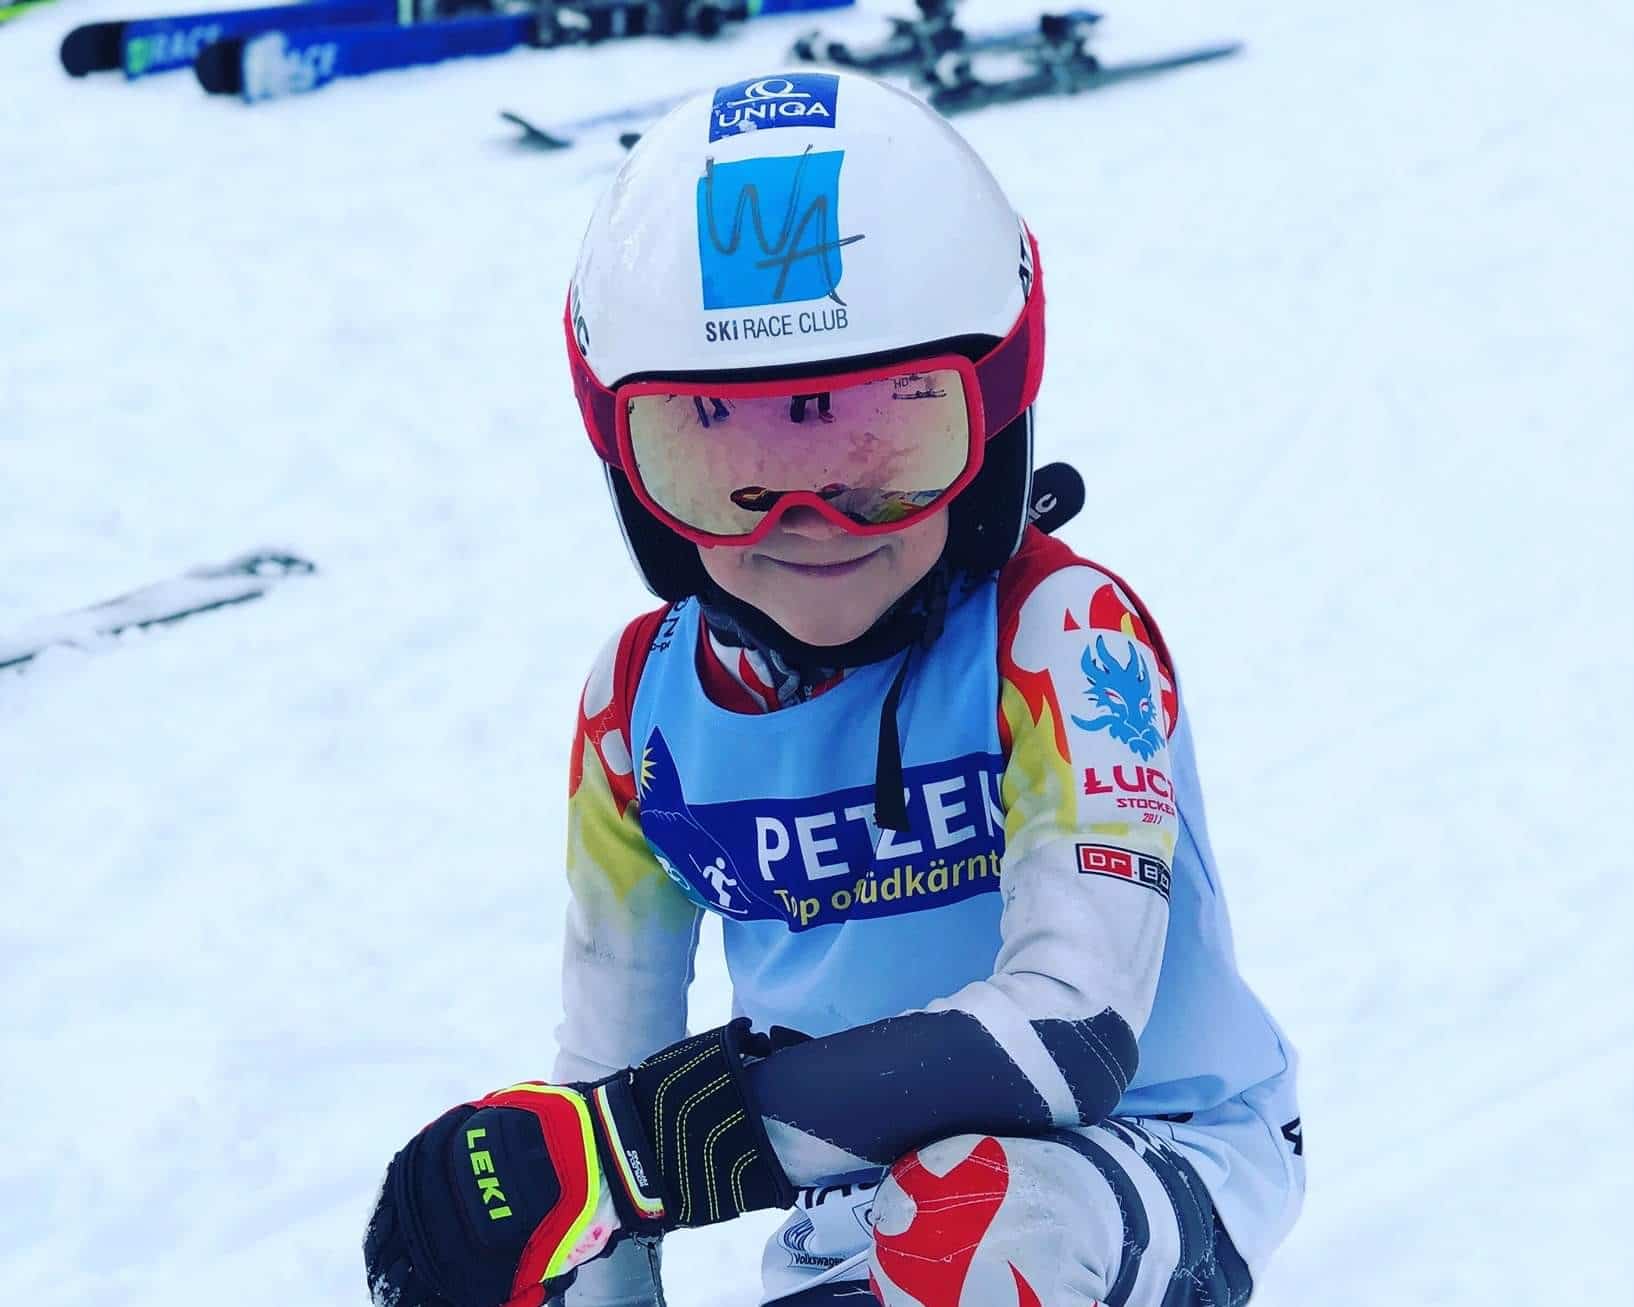 Luca liebt das Skifahren und ist mit seinen 8 Jahren schon sehr erfolgreich bei Rennen unterwegs.